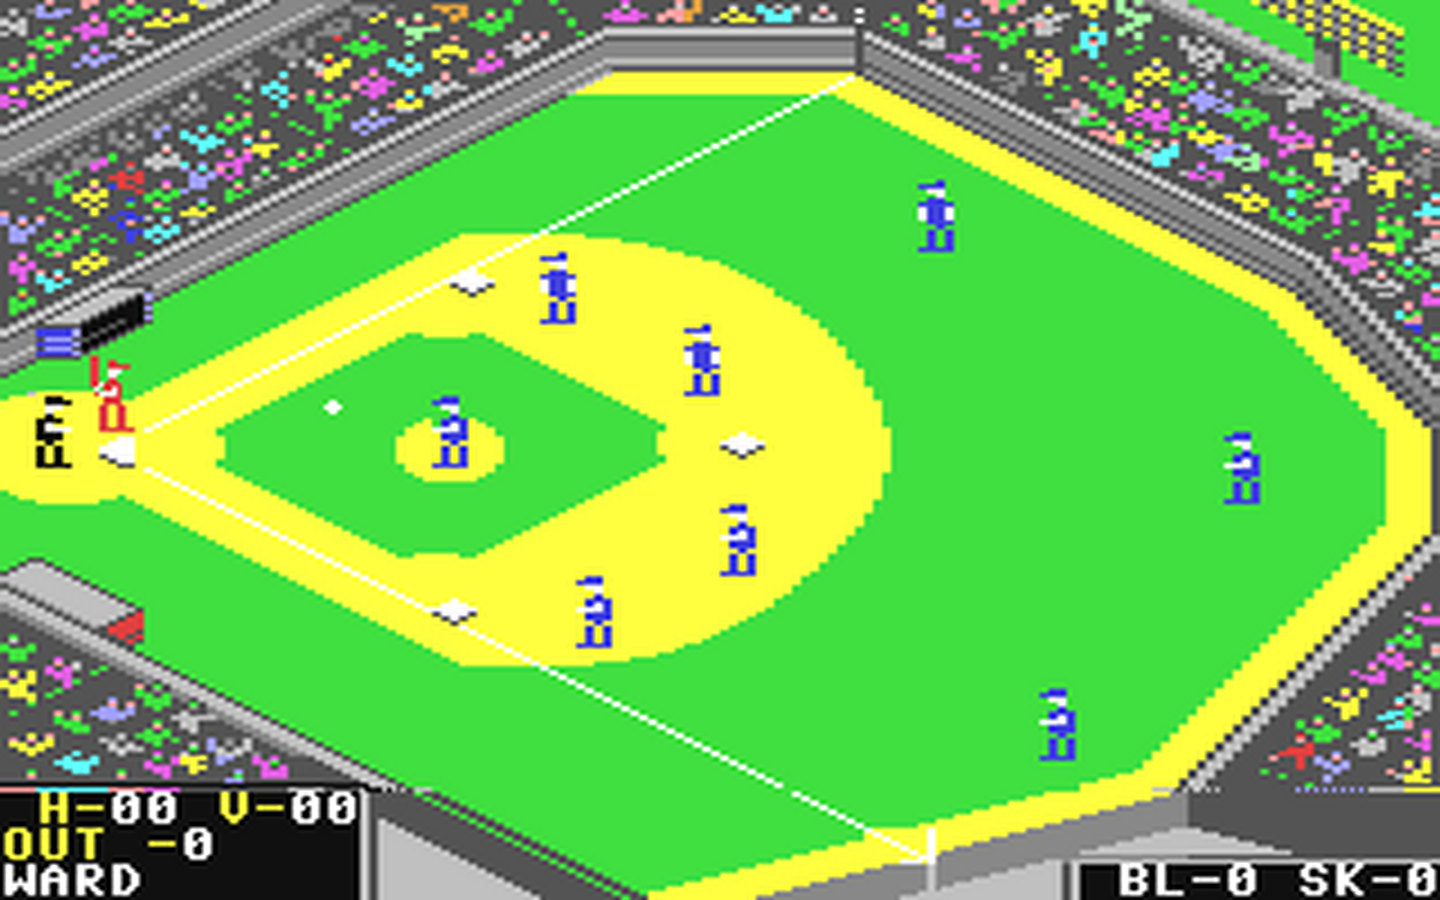 C64 GameBase World's_Greatest_Baseball_Game,_The_-_Enhanced_Version Epyx 1986